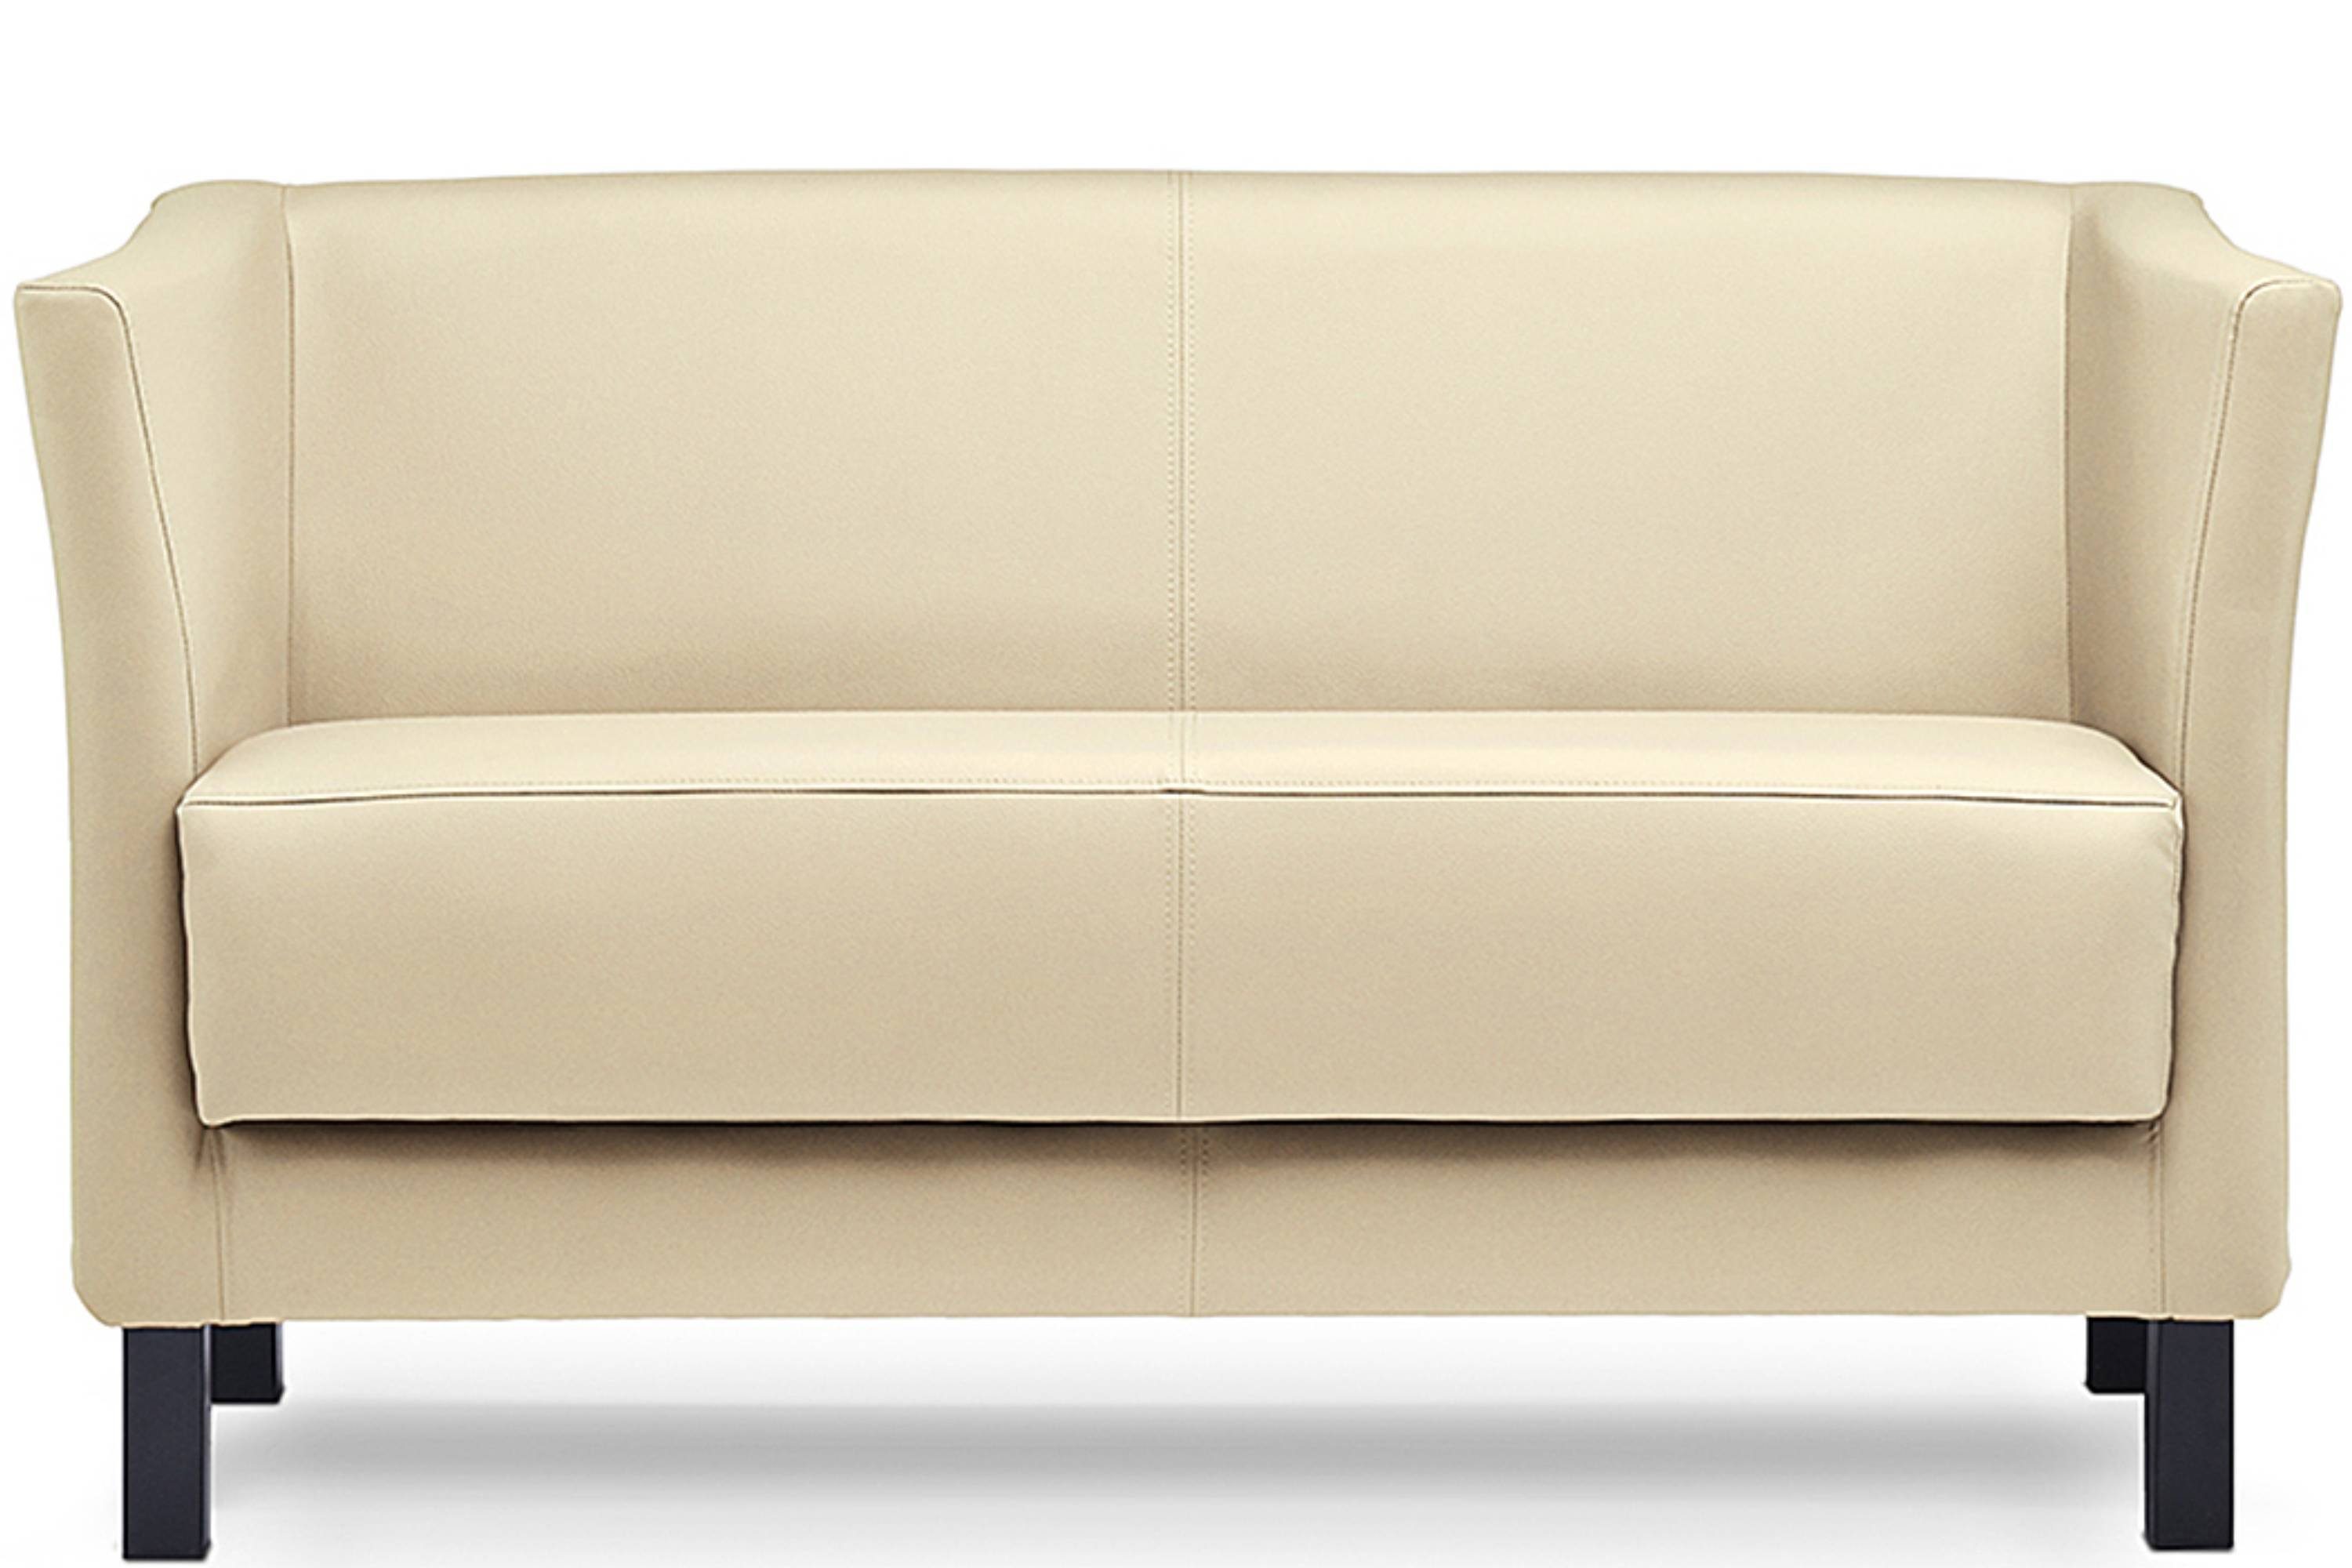 Konsimo 2-Sitzer ESPECTO Sofa 2 Personen, weiche Sitzfläche und hohe Rückenlehne, Kunstleder, hohe Massivholzbeine creme | creme